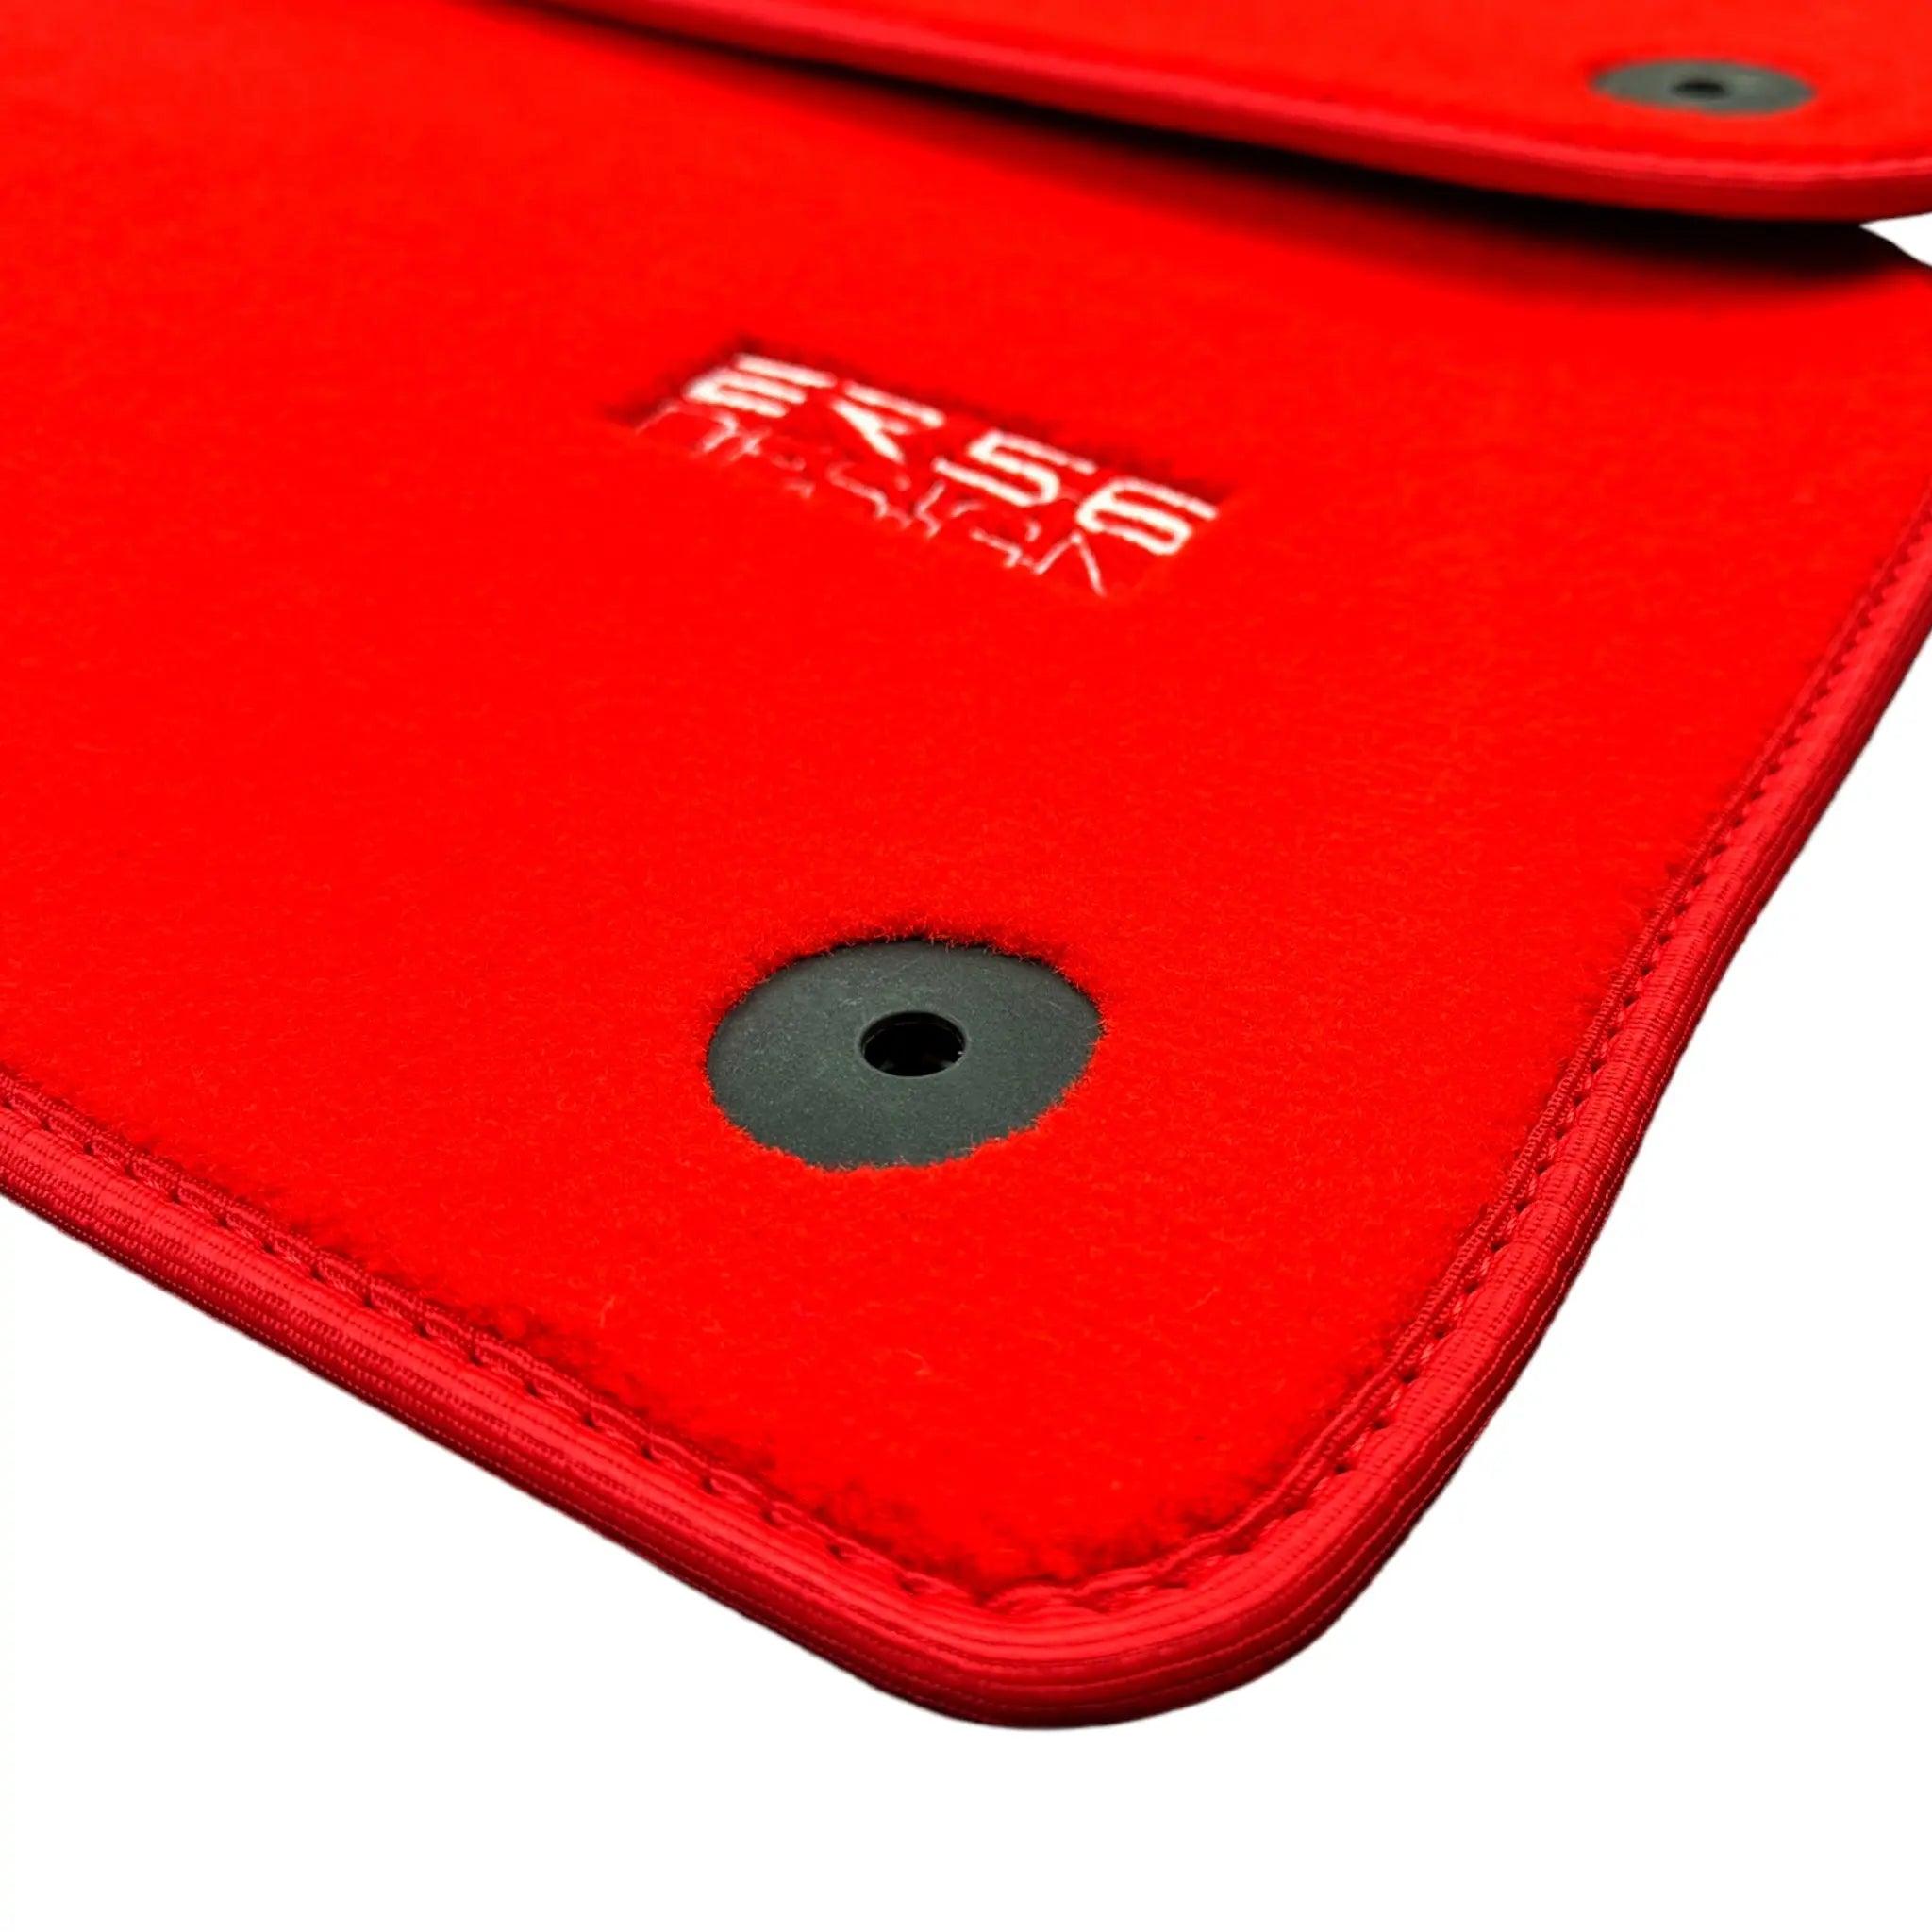 Red Floor Mats for Audi A3 - 3-door Hatchback (2013-2020) | ER56 Design